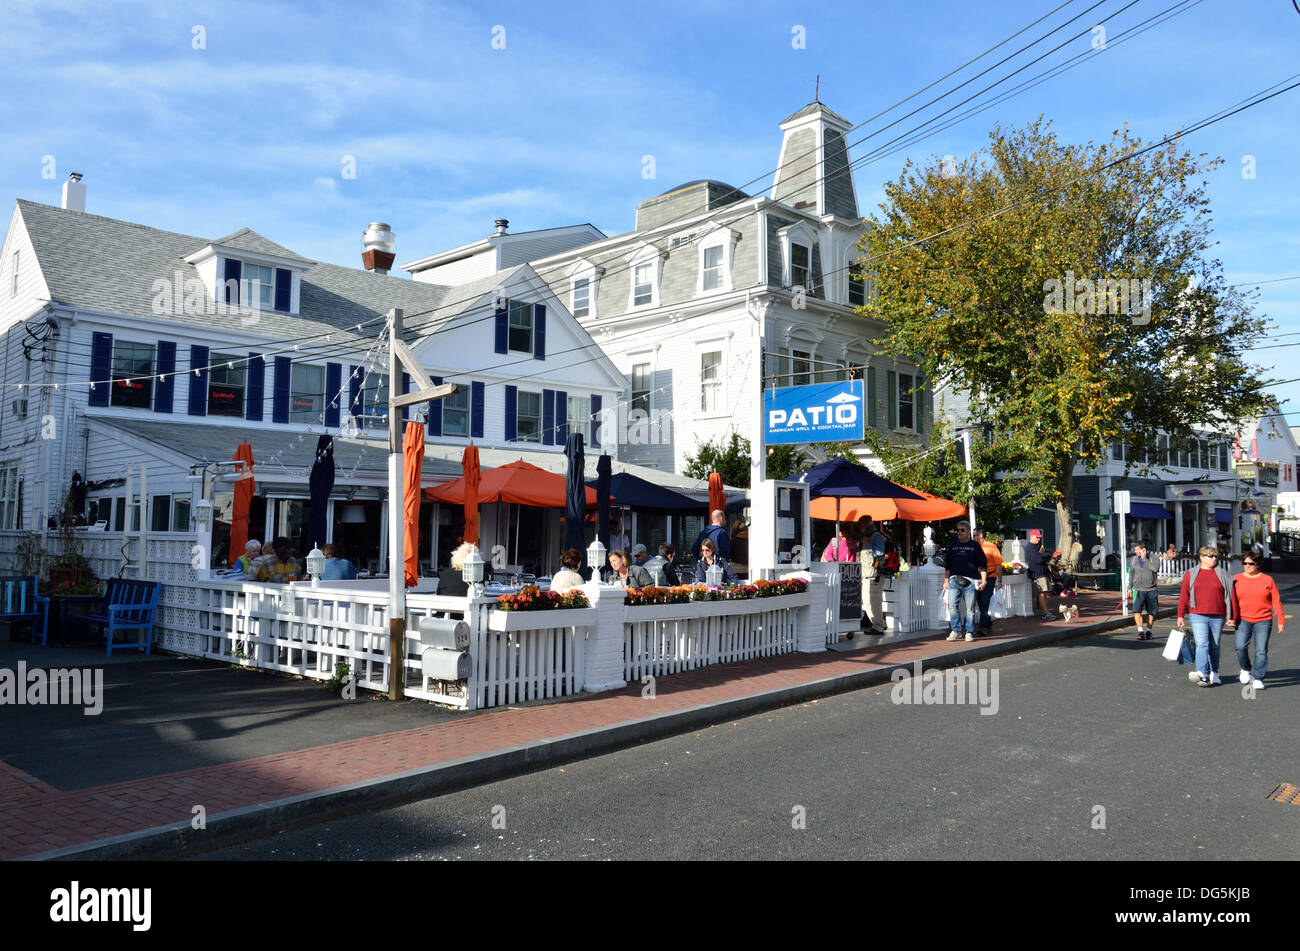 Street vista panoramica di un cafe ristorante Patio con ristoranti in costiera Cape Cod città di villeggiatura a Provincetown Massachusetts STATI UNITI D'AMERICA. Foto Stock